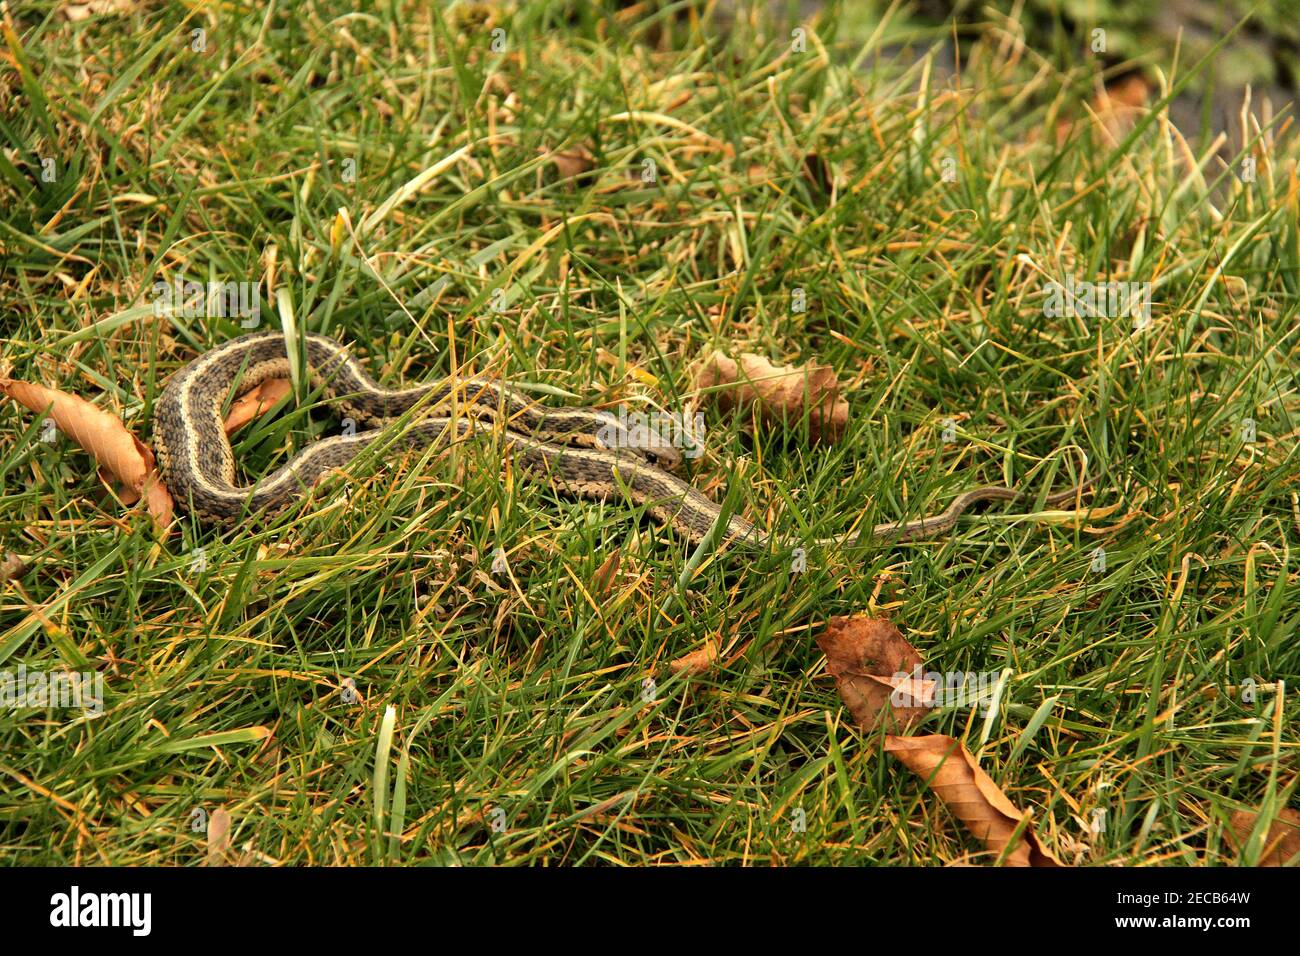 Virginie, États-Unis. Un serpent de Gartnerserpent de l'est avec de la nourriture dans son ventre. Banque D'Images